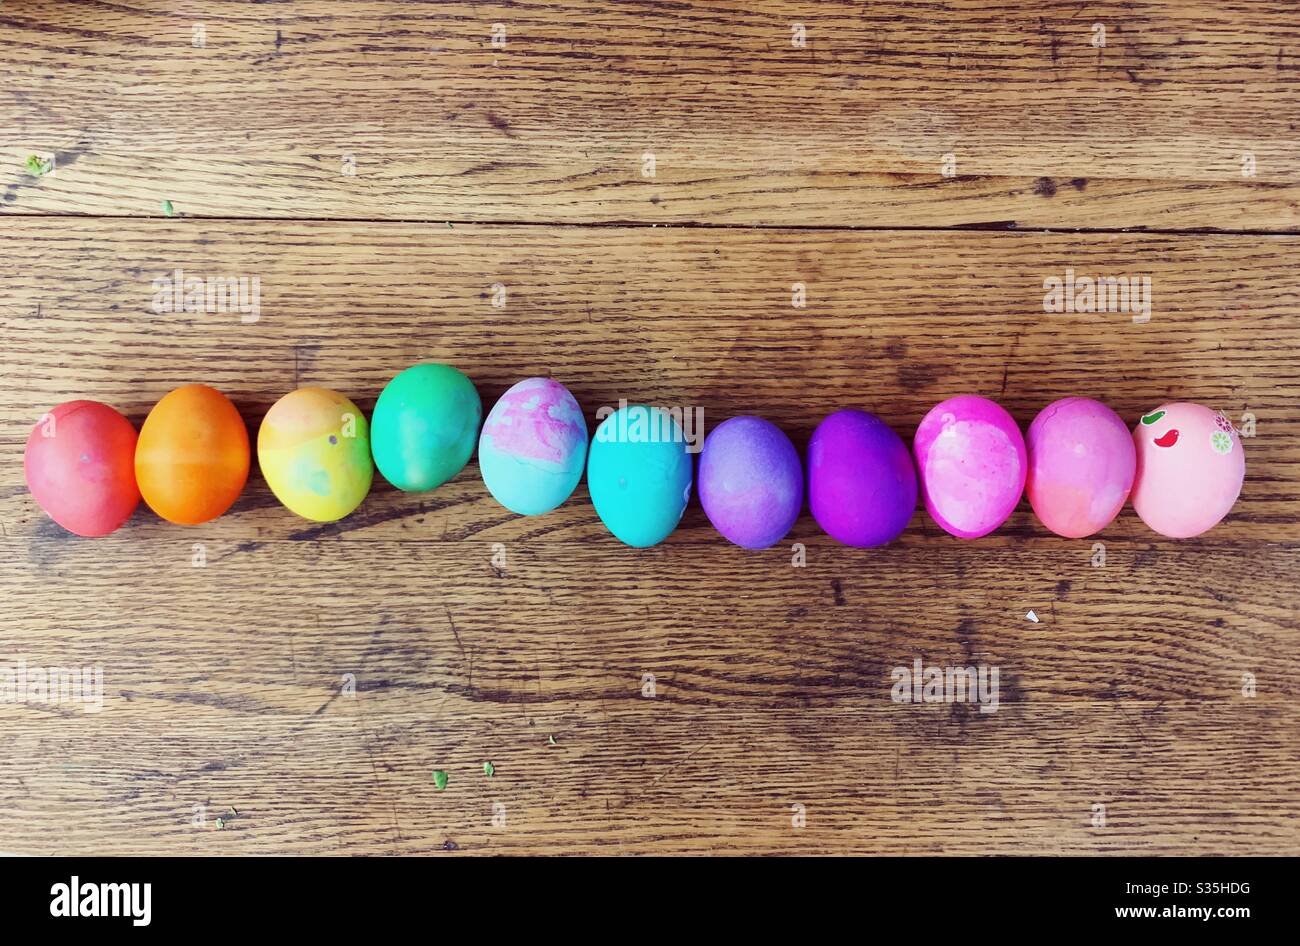 Huevos de Pascua teñidos alineados en orden arco iris Foto de stock